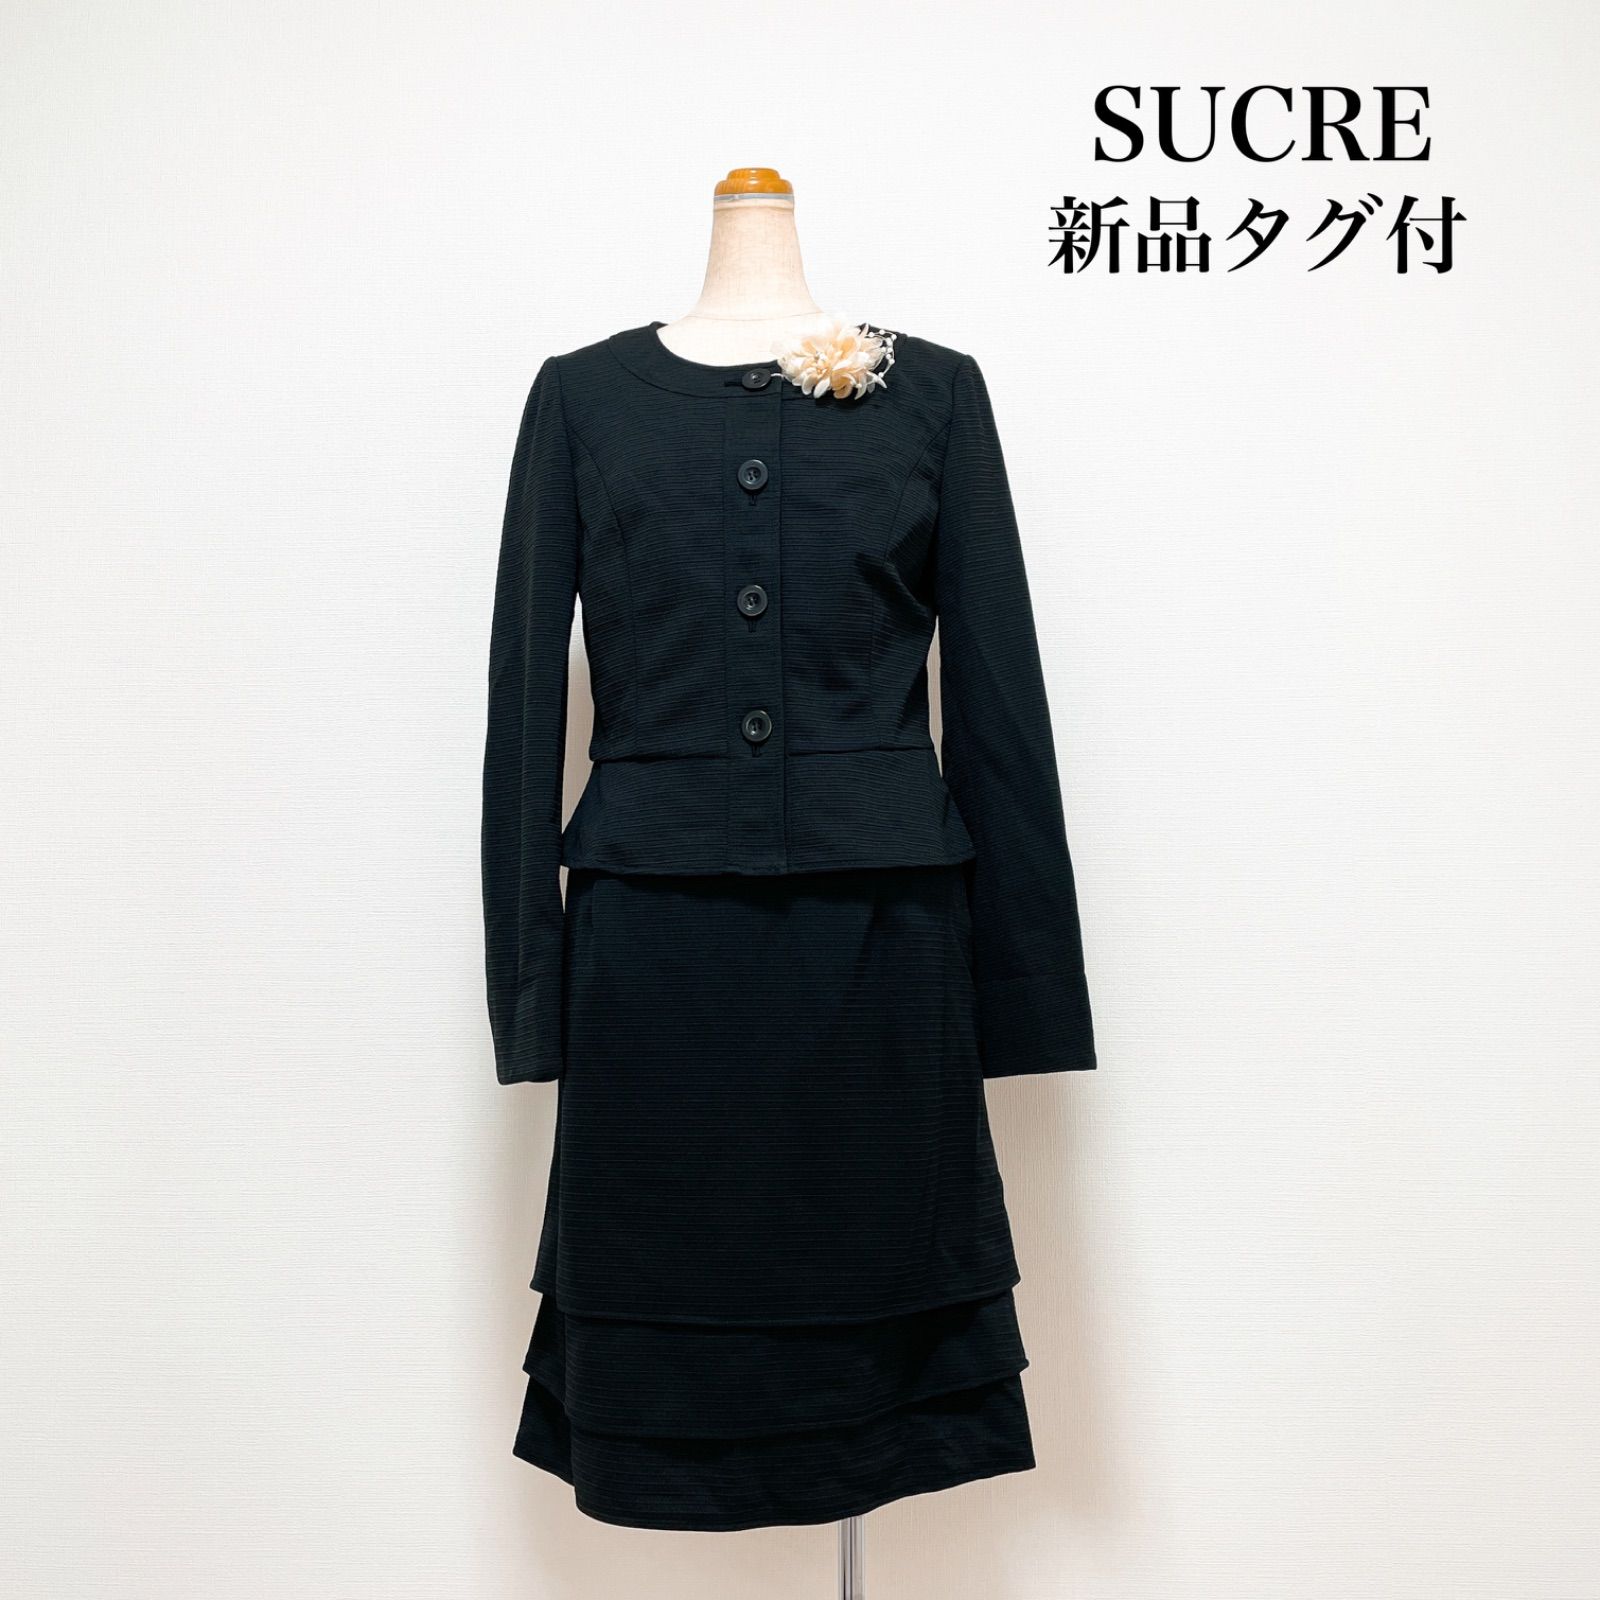 【新品タグ付】SUCRE スカートスーツ 9号 Mサイズ相当 黒 仕事 セレモニー 入学式 入園式 卒業式 卒園式